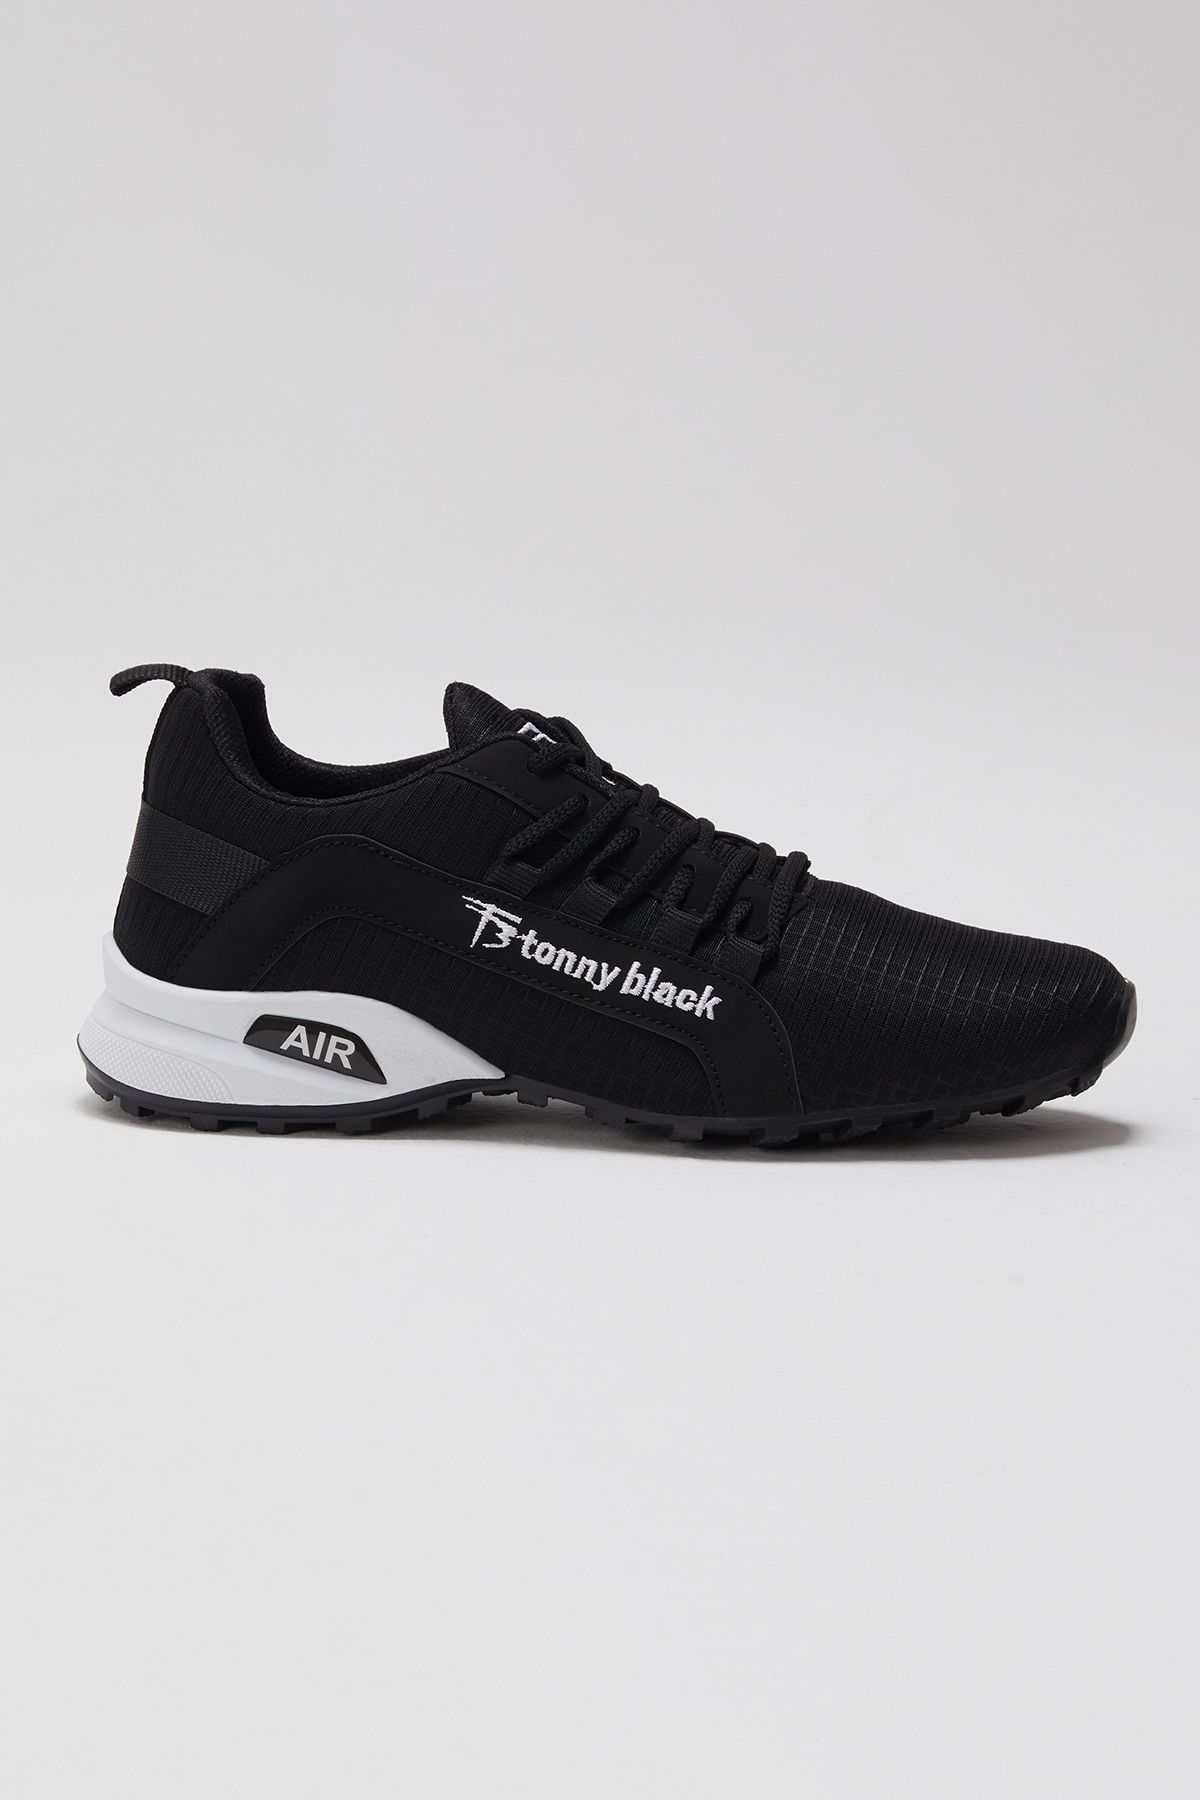 Tonny Black Erkek Siyah Beyaz Rahat Kalıp Termo Taban Bağcıklı Sneaker